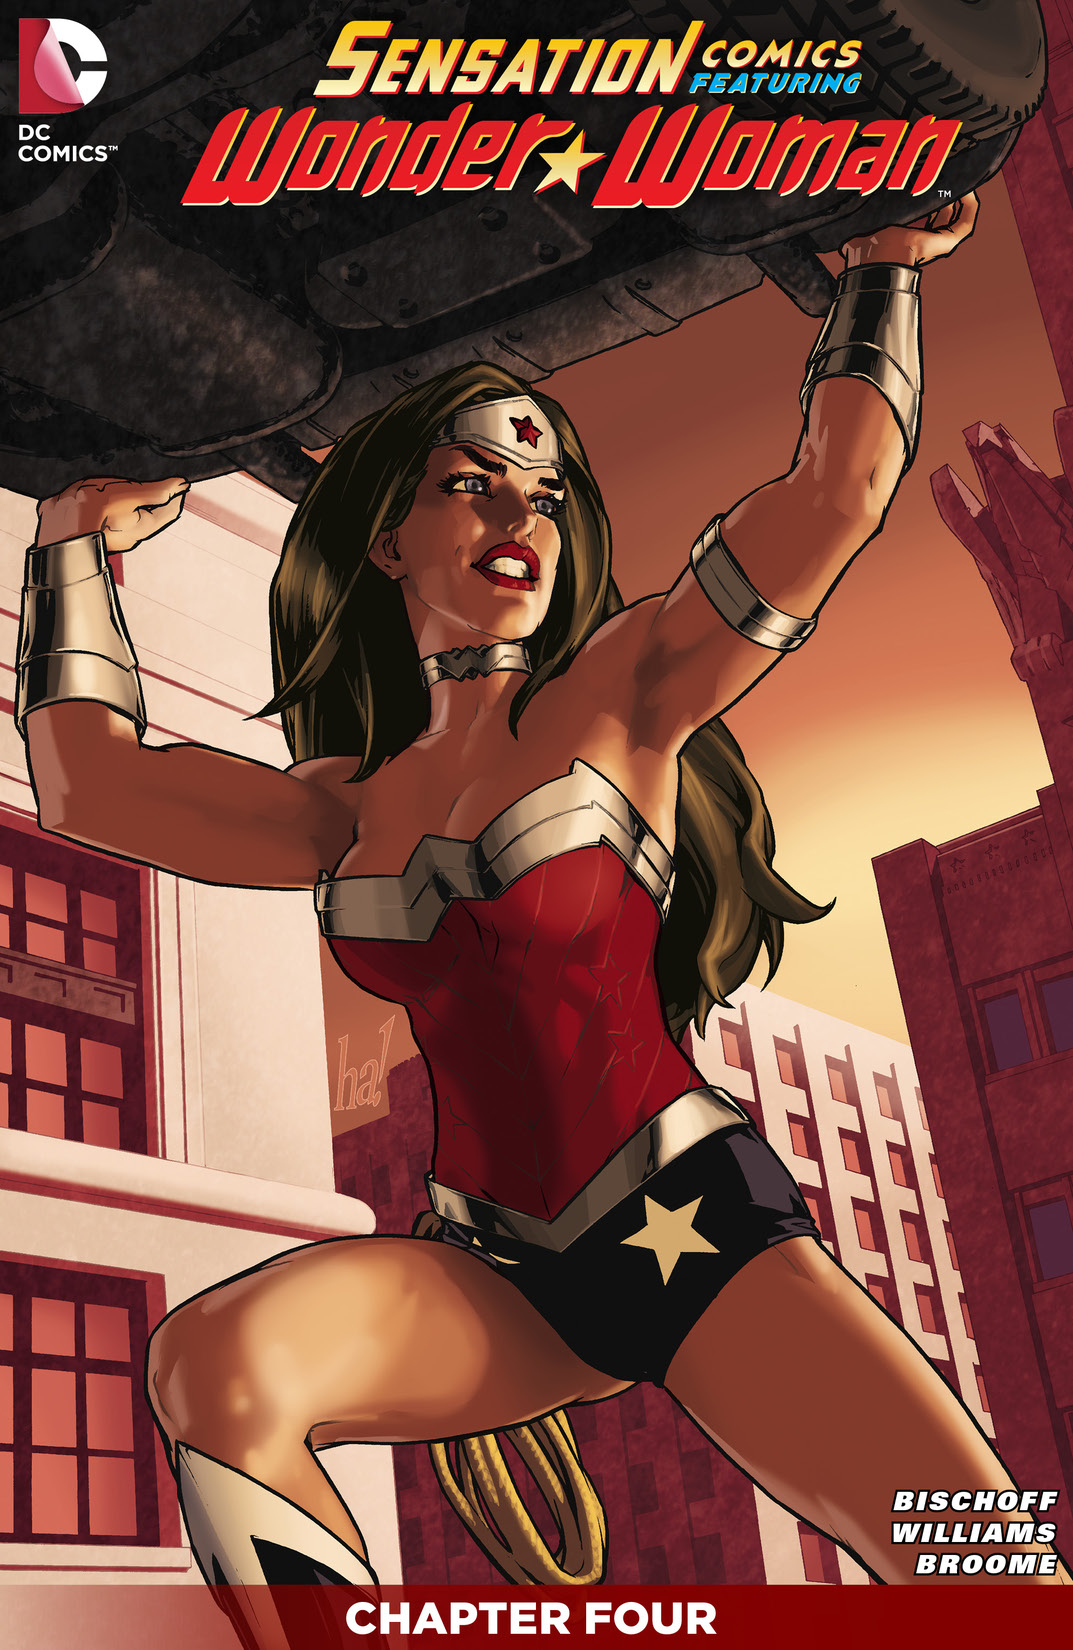 Sensation Comics Featuring Wonder Woman #4 preview images